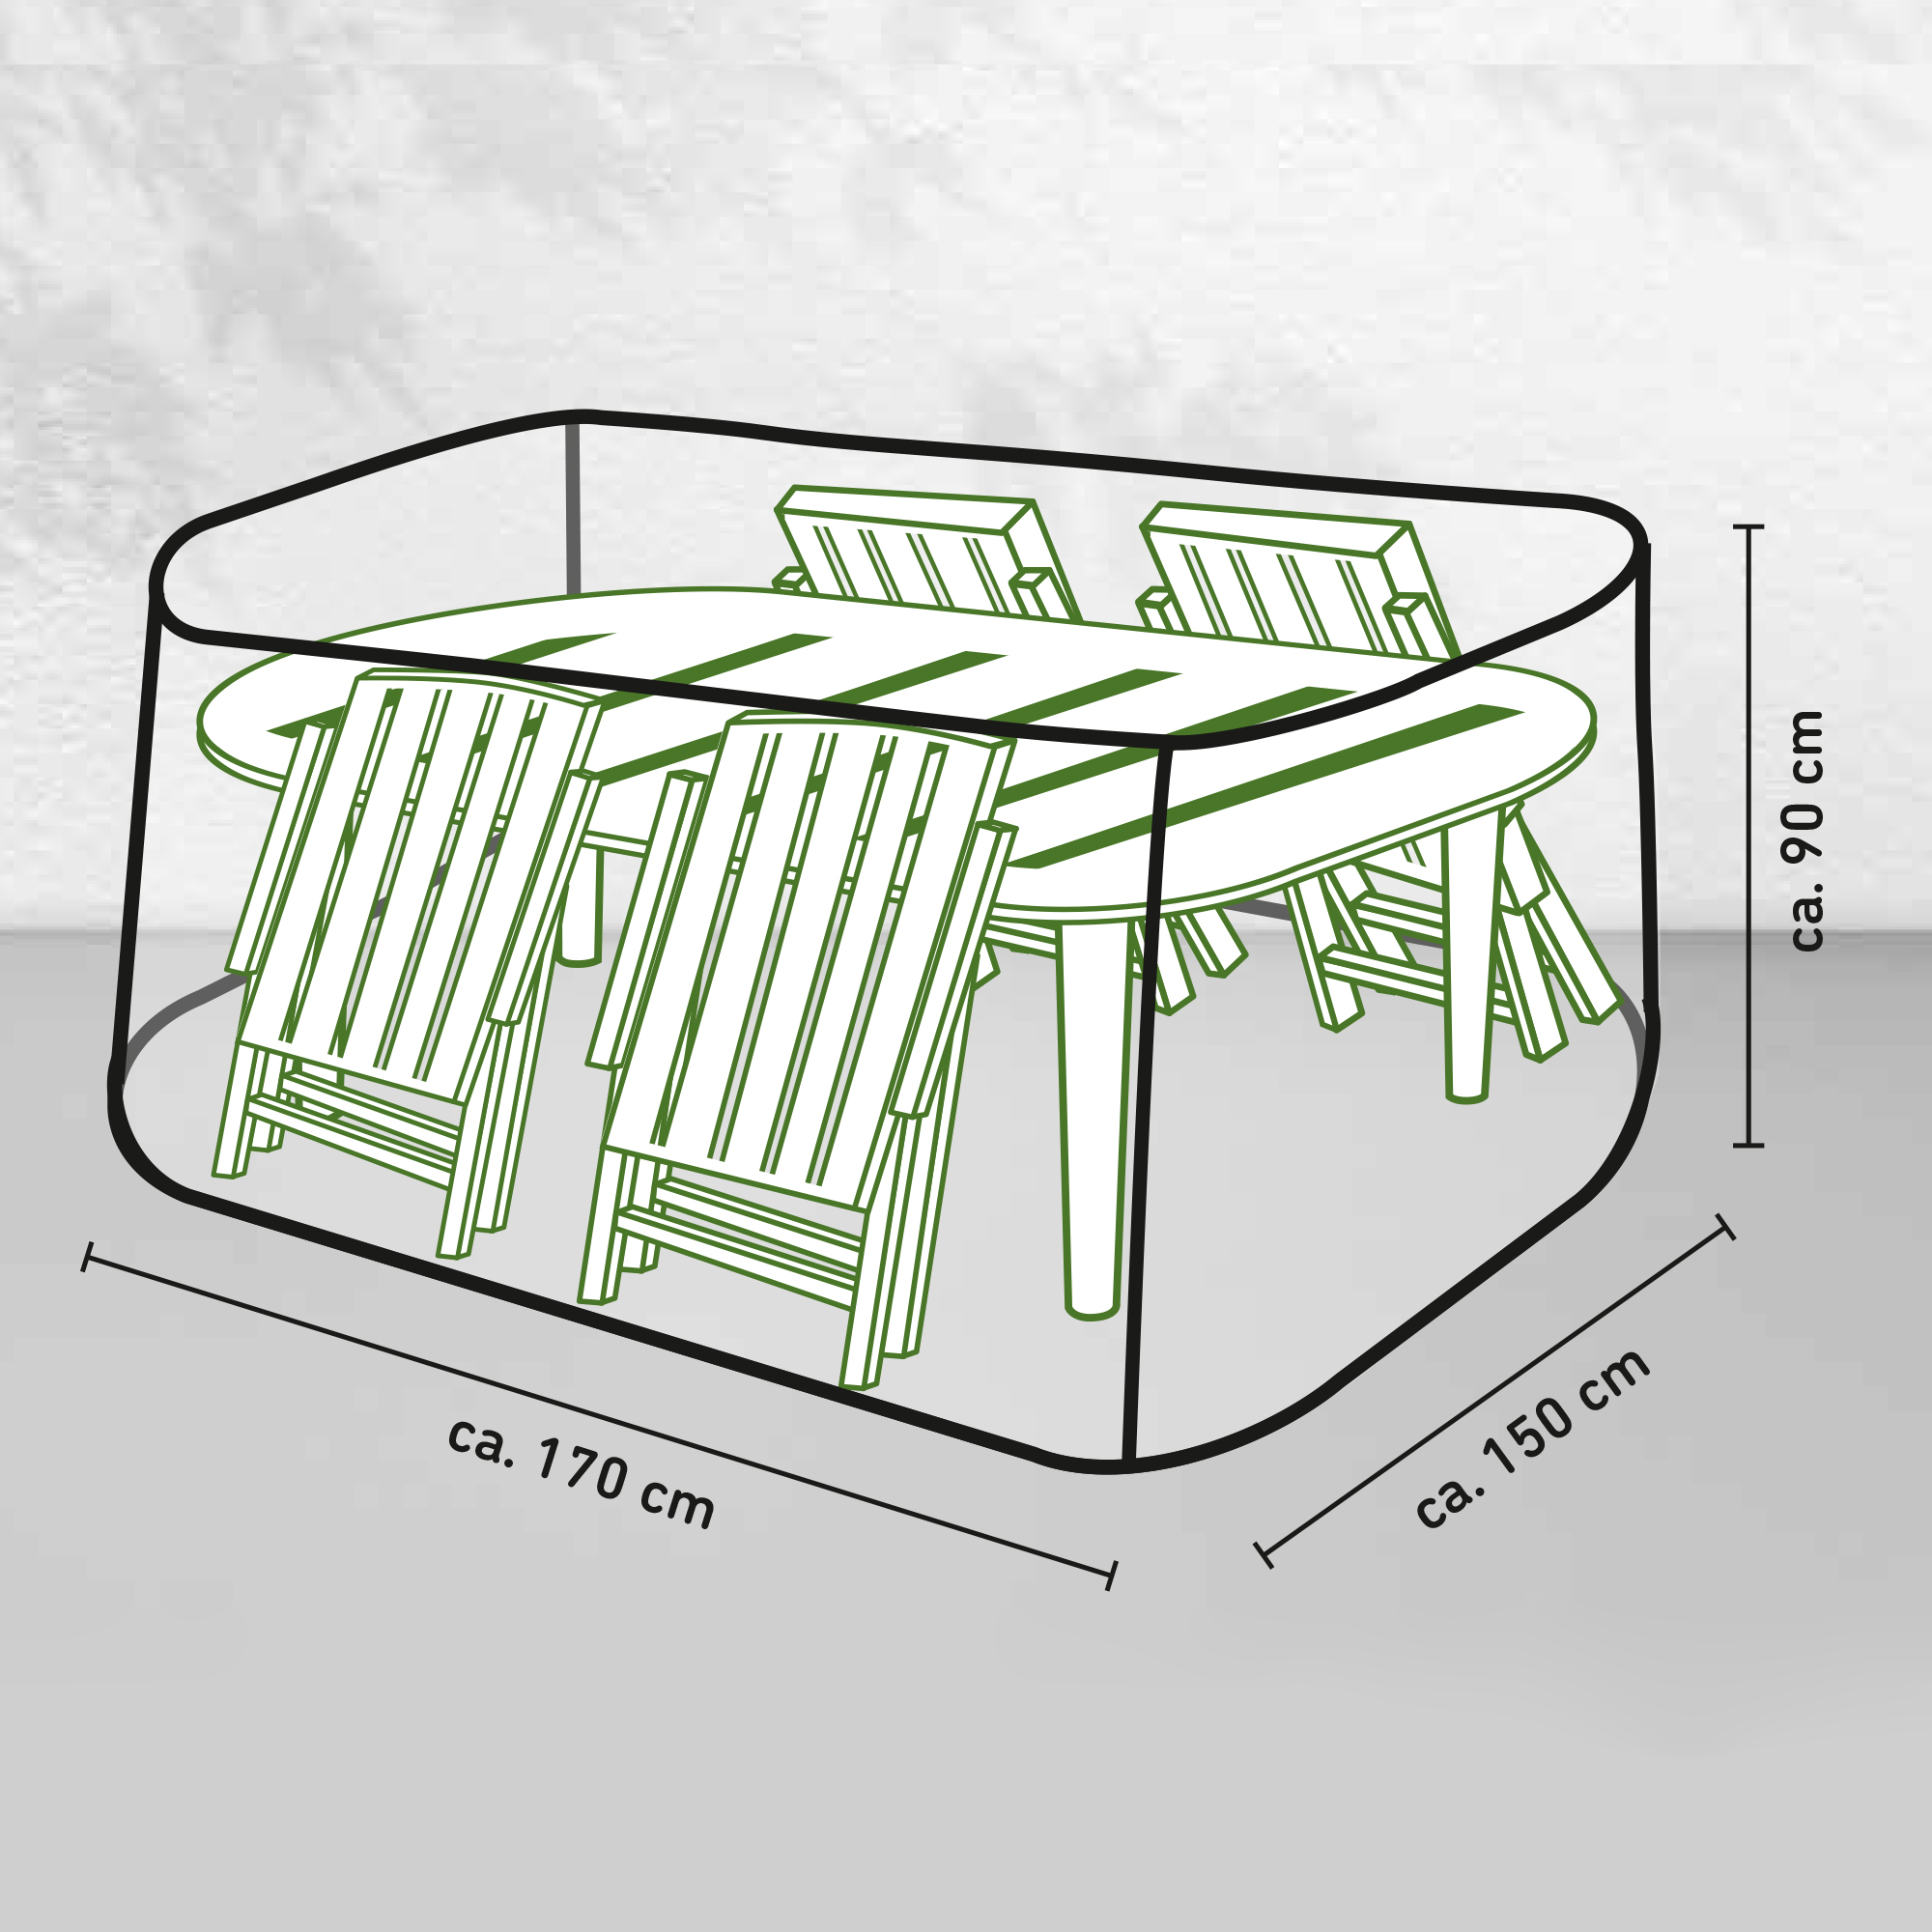 Sitzgruppe-Schutzhülle für Gartenmöbel-Sets mit Tisch bis 1,6 m Länge + product picture